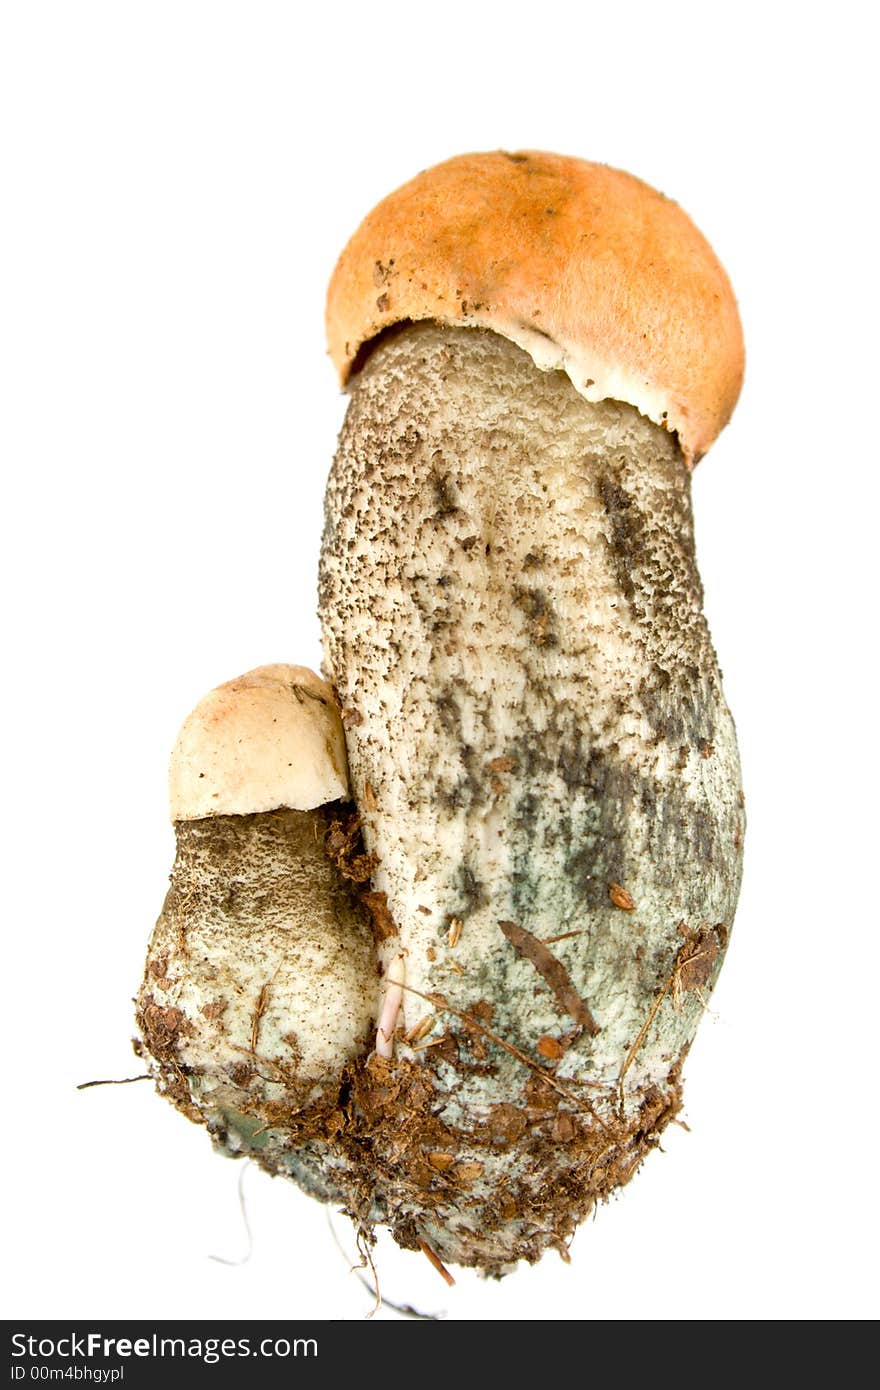 Orange-cap Mushroom isolated on white. Eatable mushroom, very delicious.